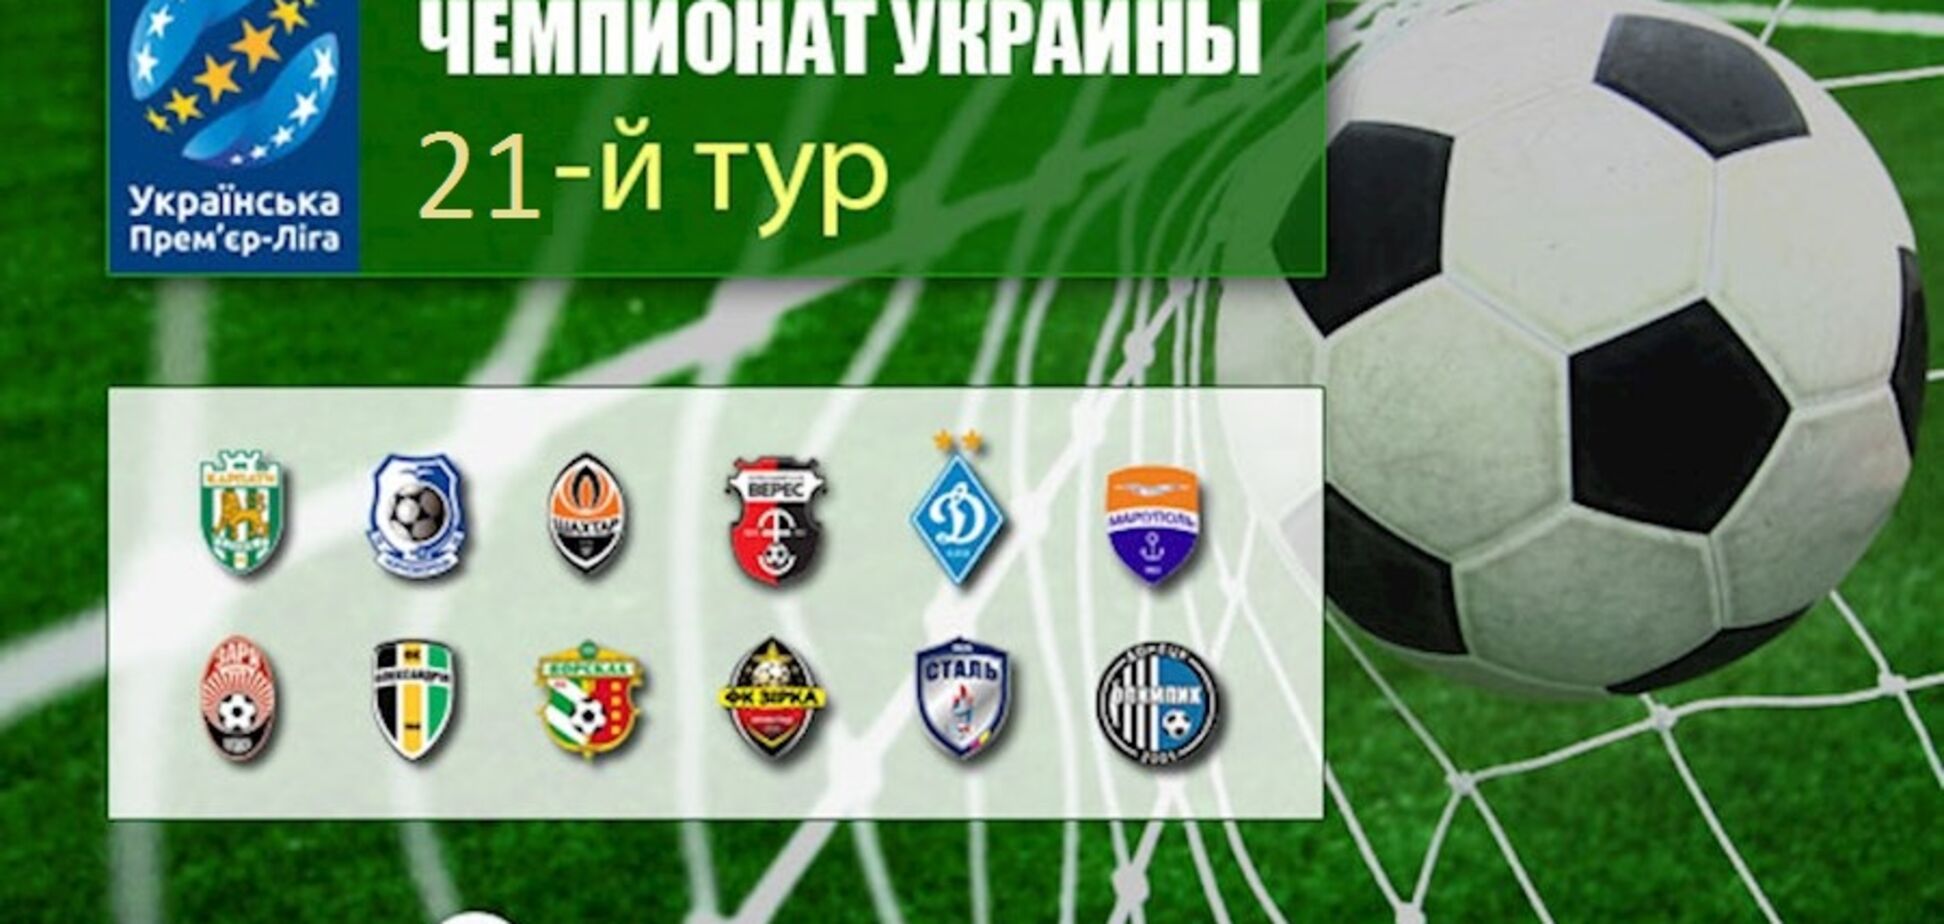 21-й тур чемпионата Украины по футболу: результаты, обзоры, турнирная таблица